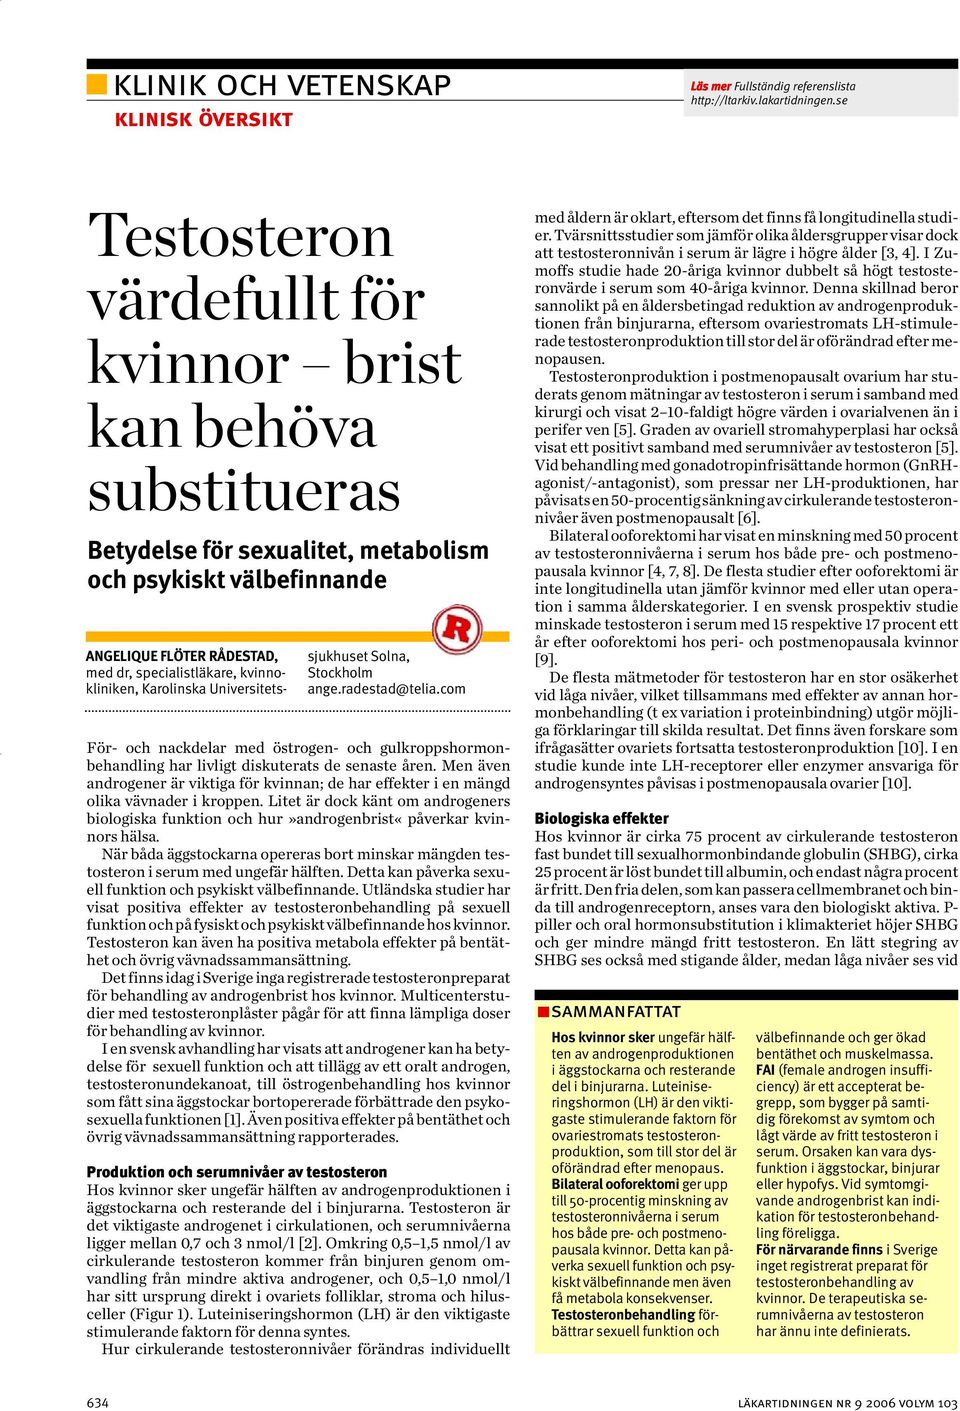 kvinnokliniken, Karolinska Universitetssjukhuset Solna, Stockholm ange.radestad@telia.com För- och nackdelar med östrogen- och gulkroppshormonbehandling har livligt diskuterats de senaste åren.